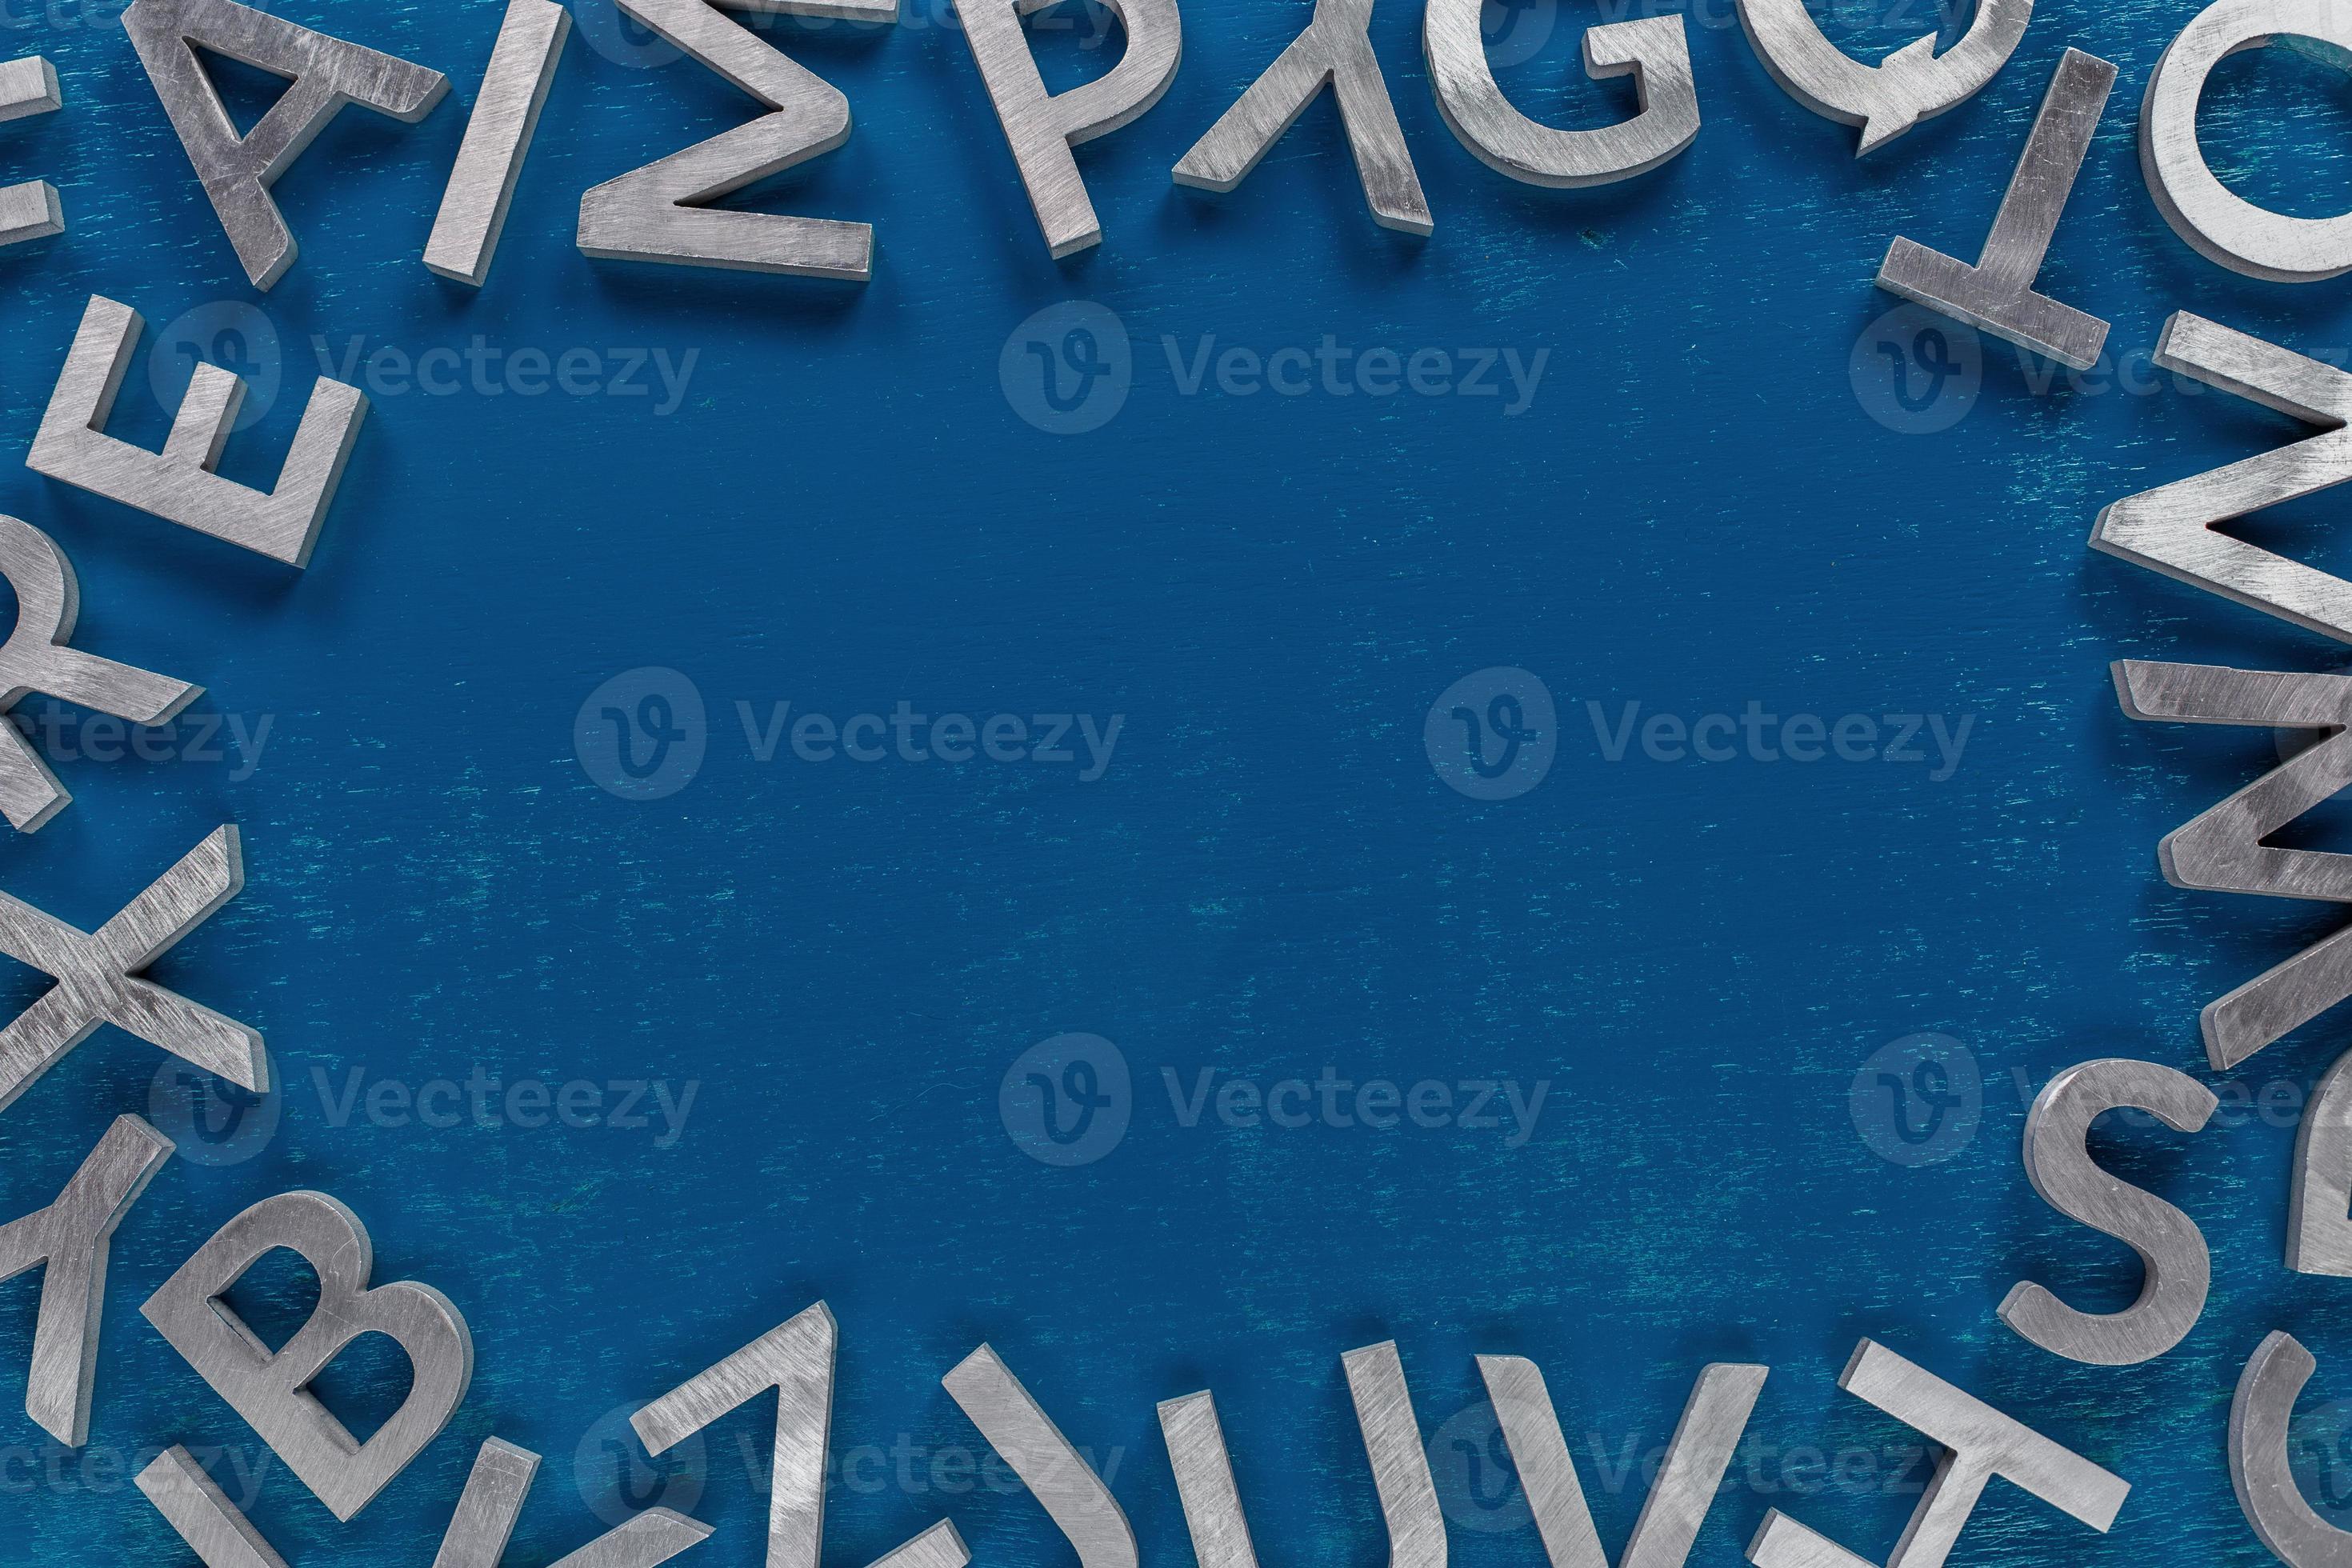 https://static.vecteezy.com/ti/fotos-kostenlos/p2/12639605-rahmenmodell-aus-silbernen-metallbuchstaben-des-englischen-alphabets-auf-klassischem-blauem-hintergrund-foto.jpg